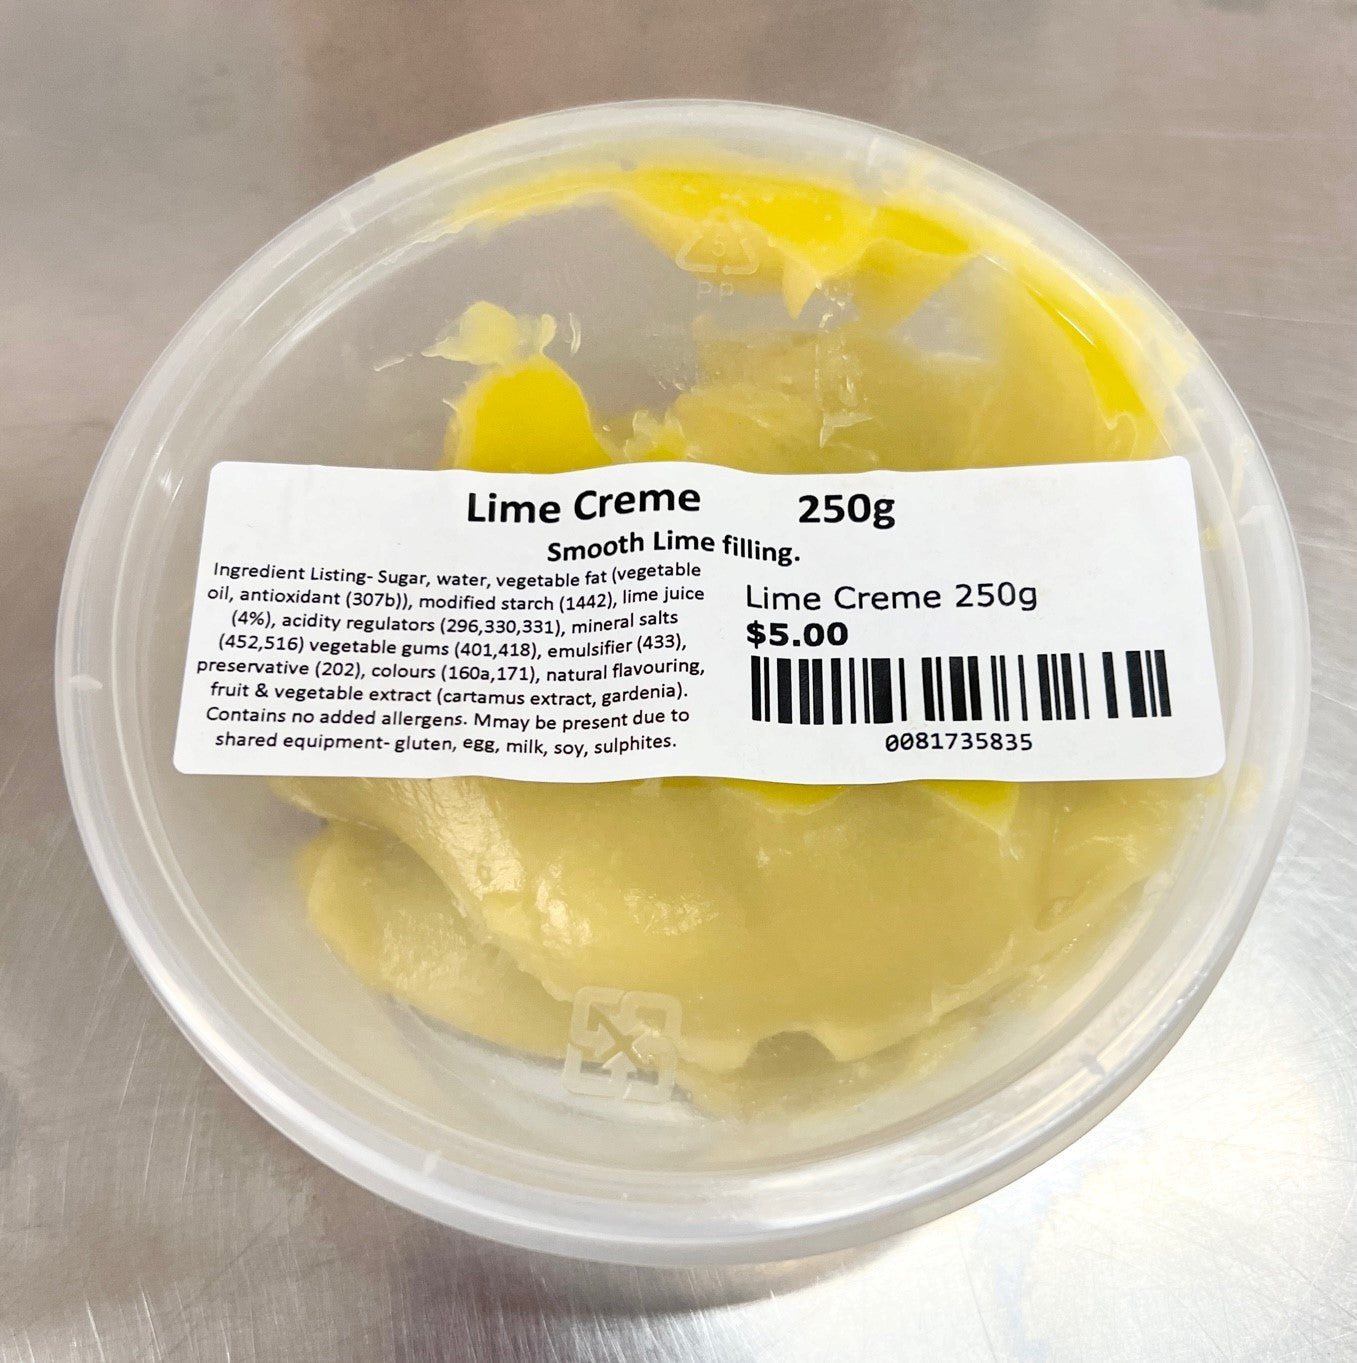 Lime Creme 250g